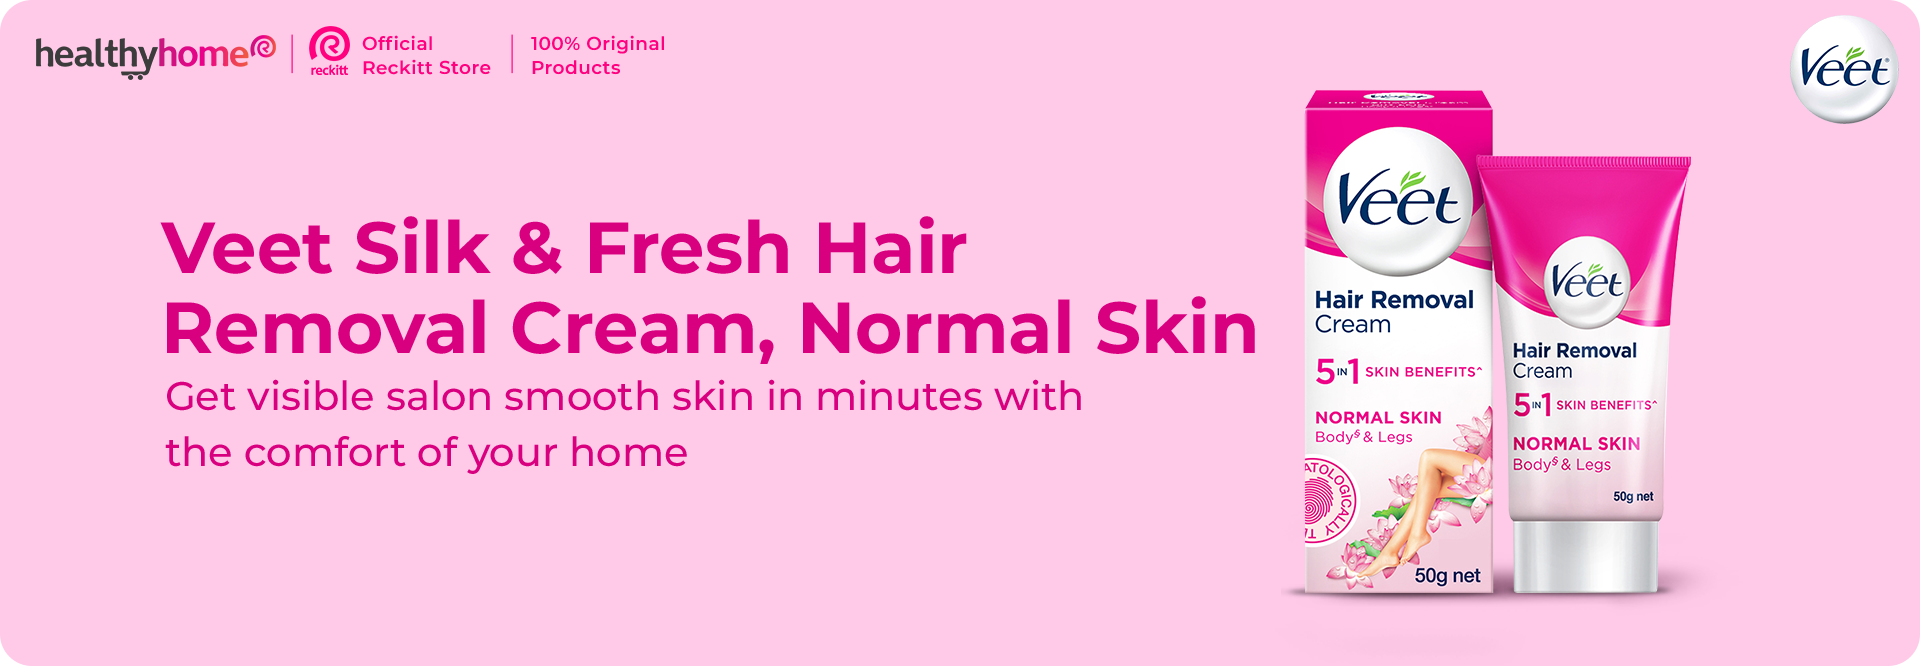 Veet Silk Fresh Hair Removal Cream Normal Skin 50 G e3436009 719a 4593 94e4 4a7307f1da1b